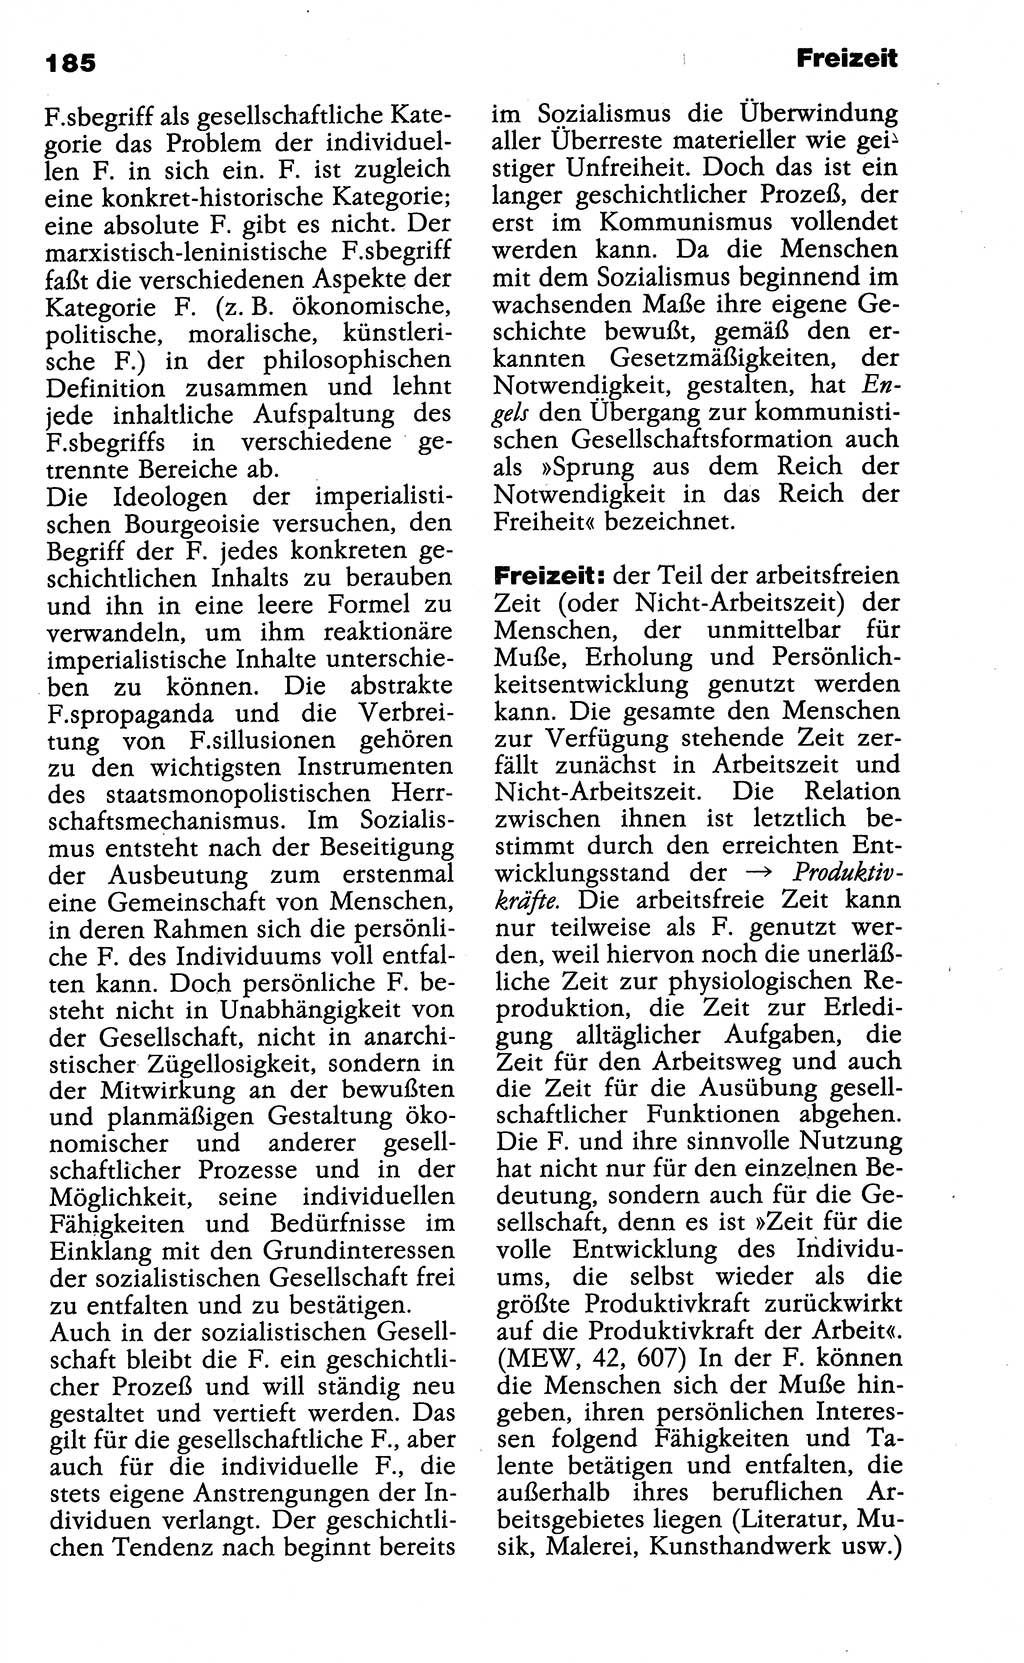 Wörterbuch der marxistisch-leninistischen Philosophie [Deutsche Demokratische Republik (DDR)] 1985, Seite 185 (Wb. ML Phil. DDR 1985, S. 185)